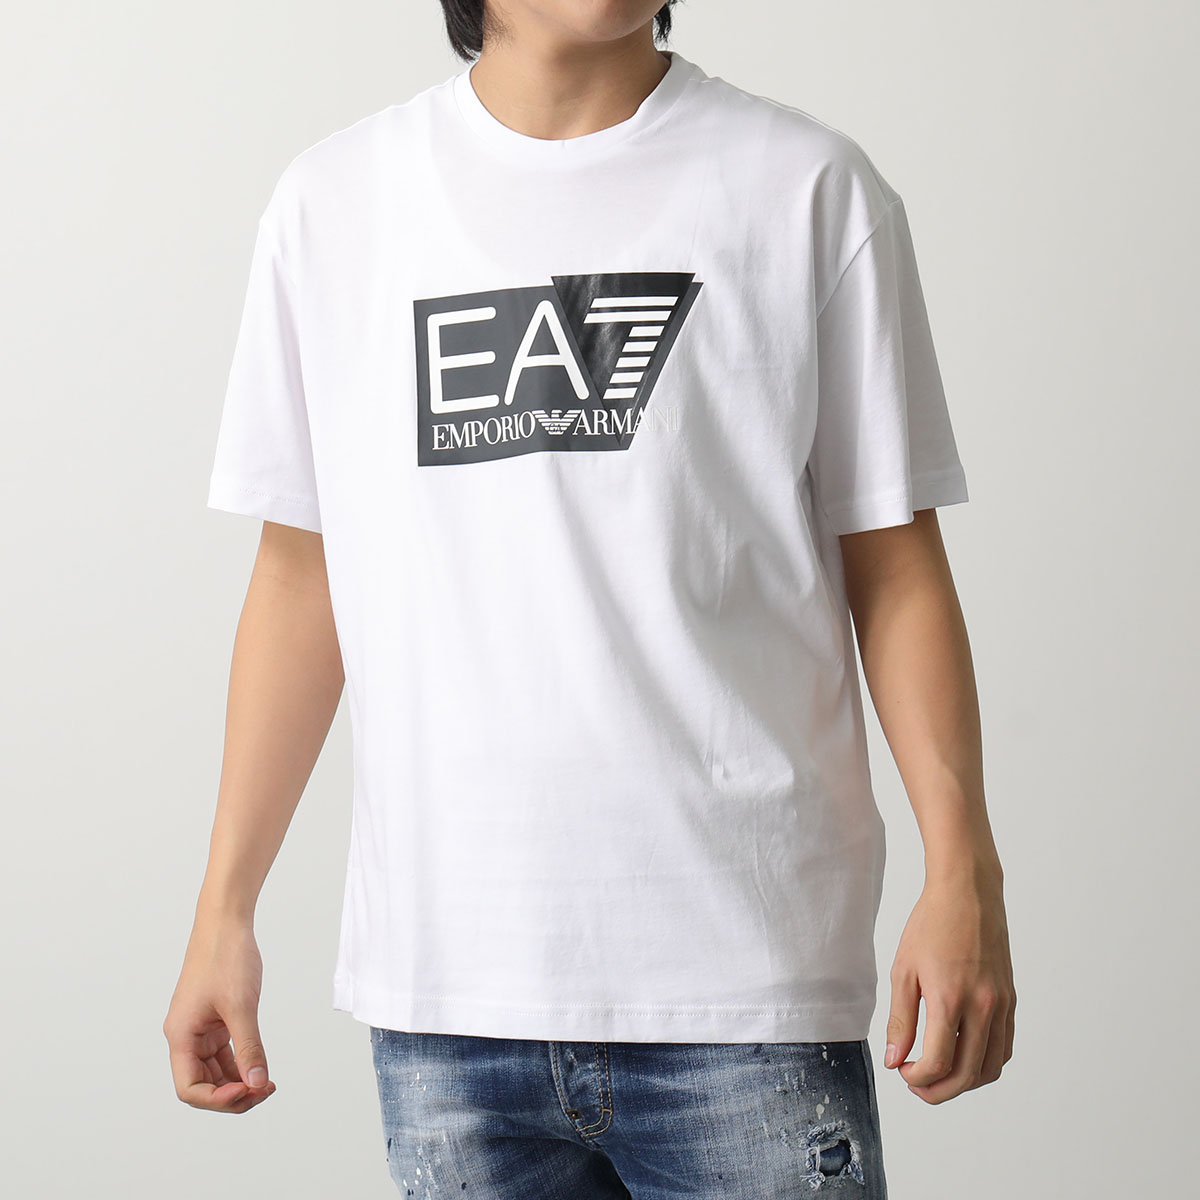 EA7 EMPORIO ARMANI エアセッテ エンポリオアルマーニ Tシャツ 3DPT09 PJ02Z メンズ 半袖 カットソー クルーネック  ロゴT コットン カラー2色